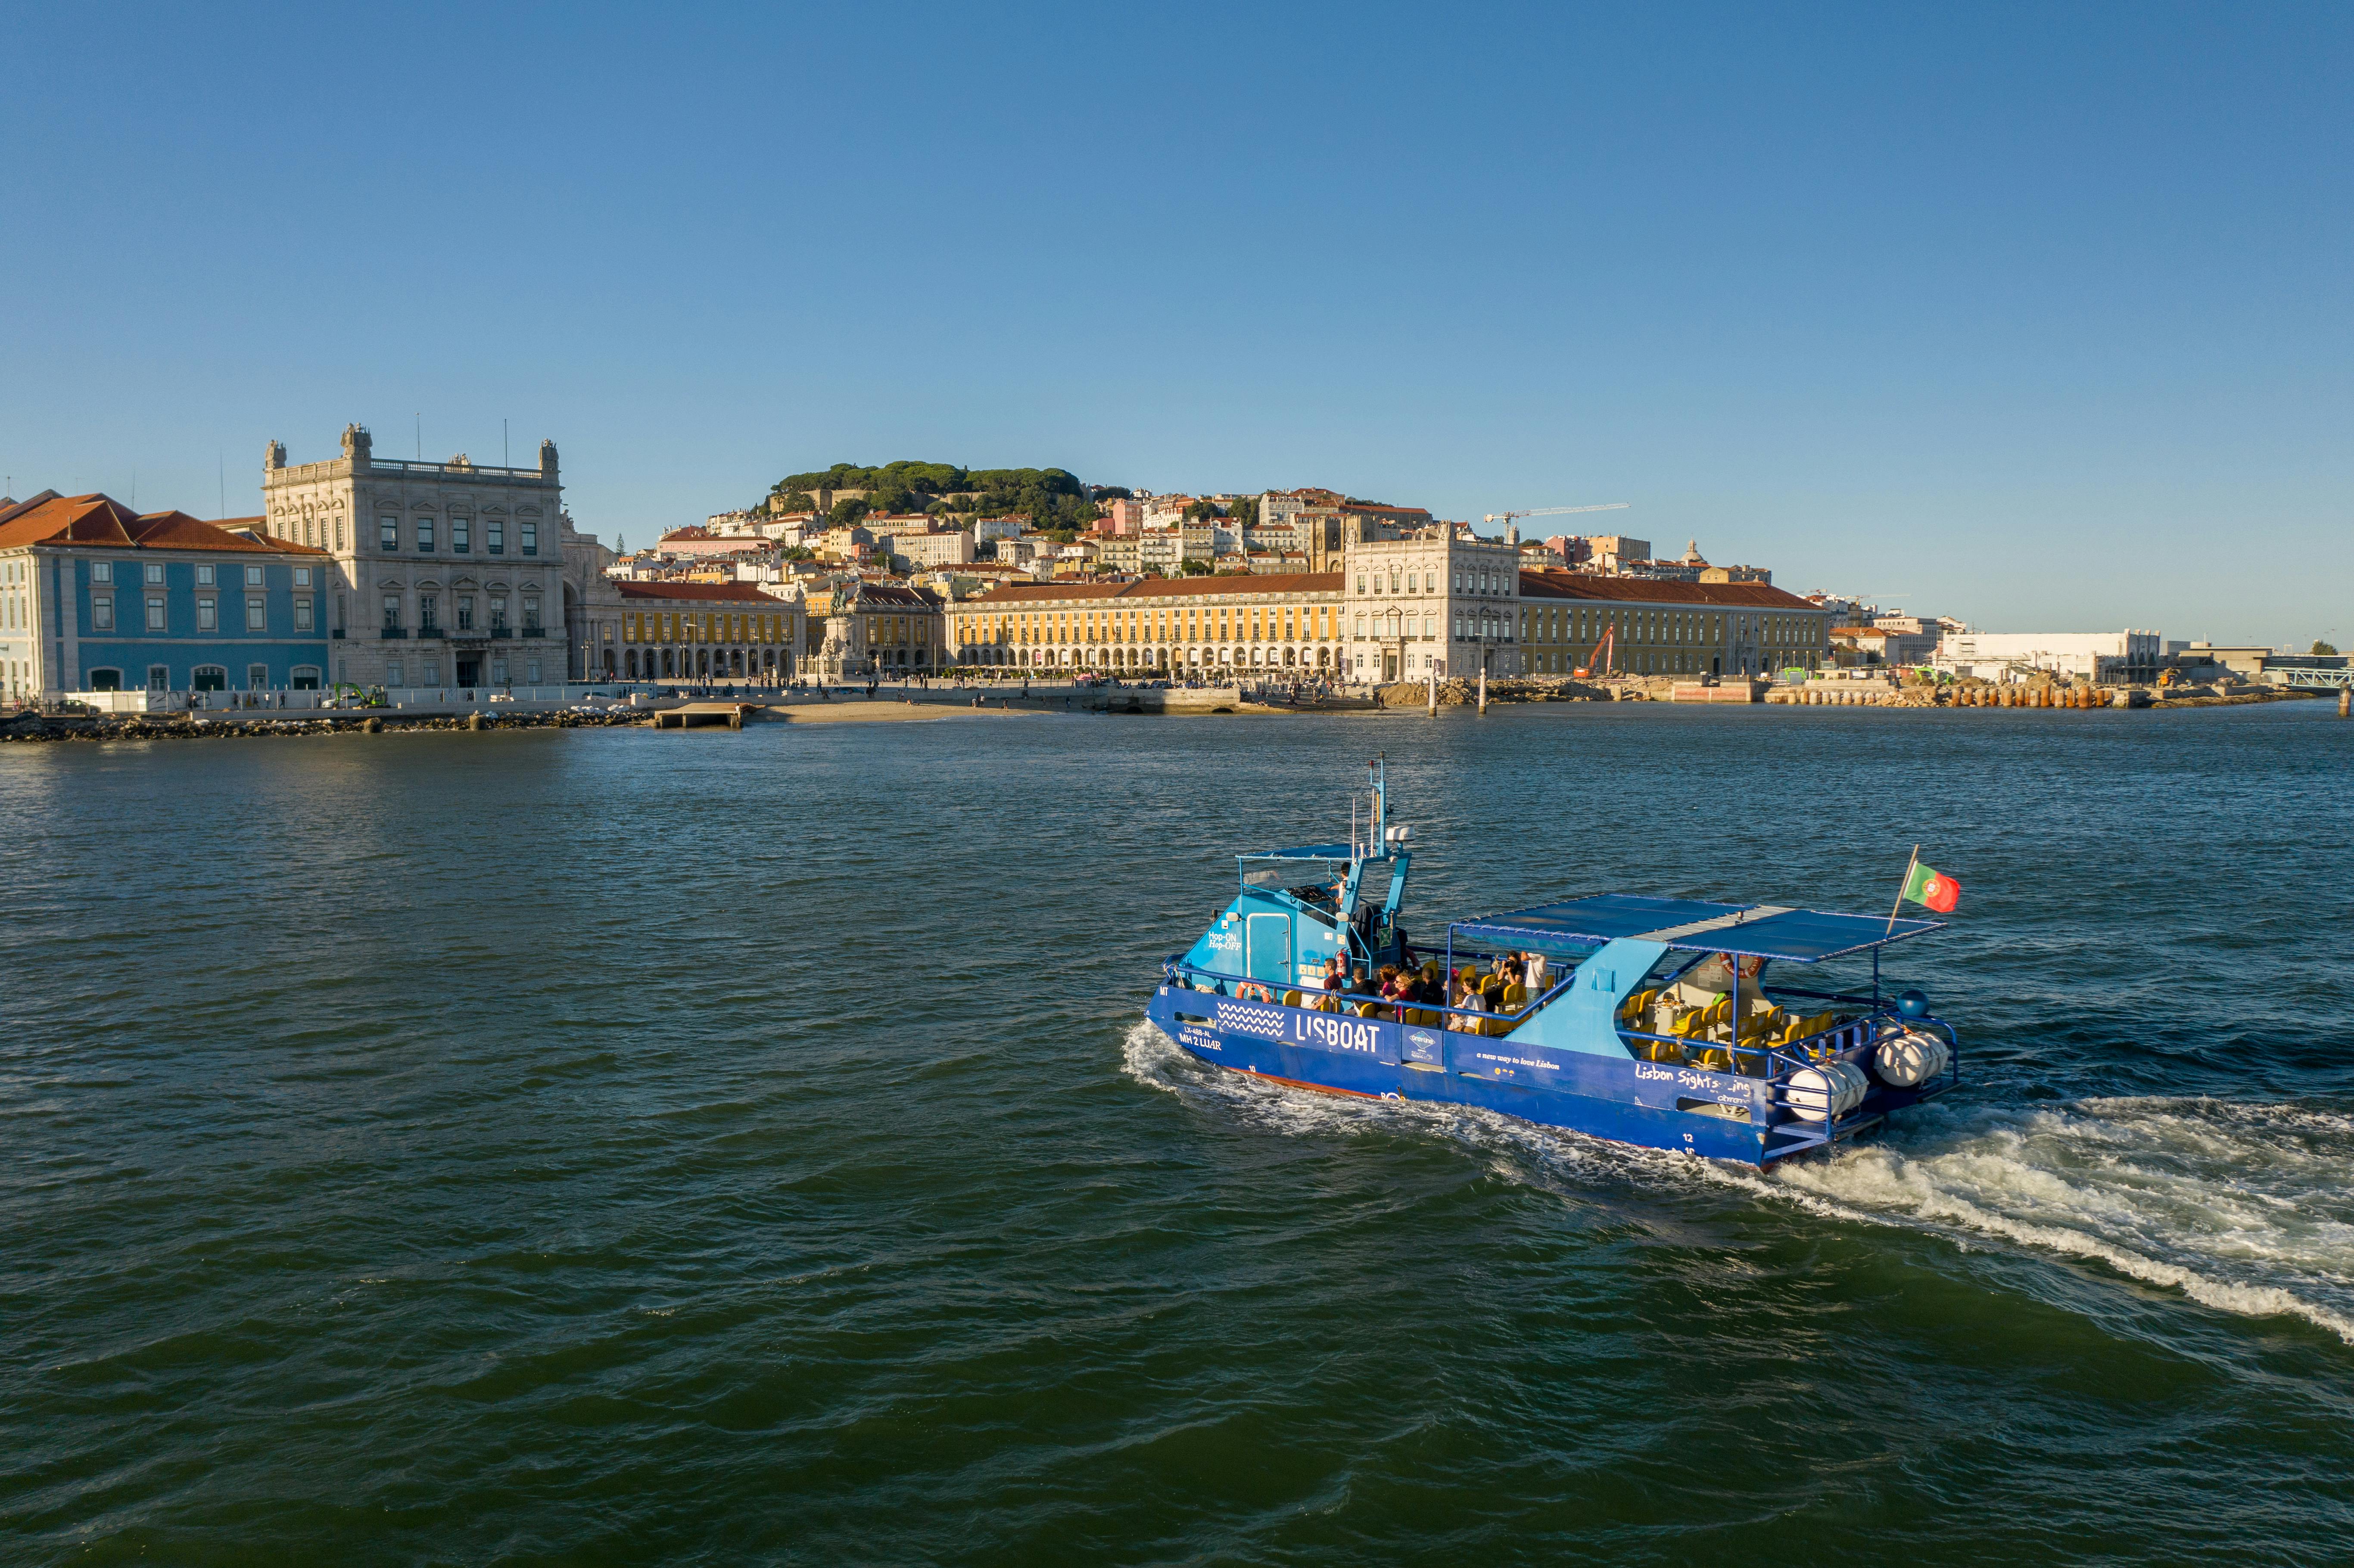 48-godzinne bilety na hop-on hop-off w Lizbonie